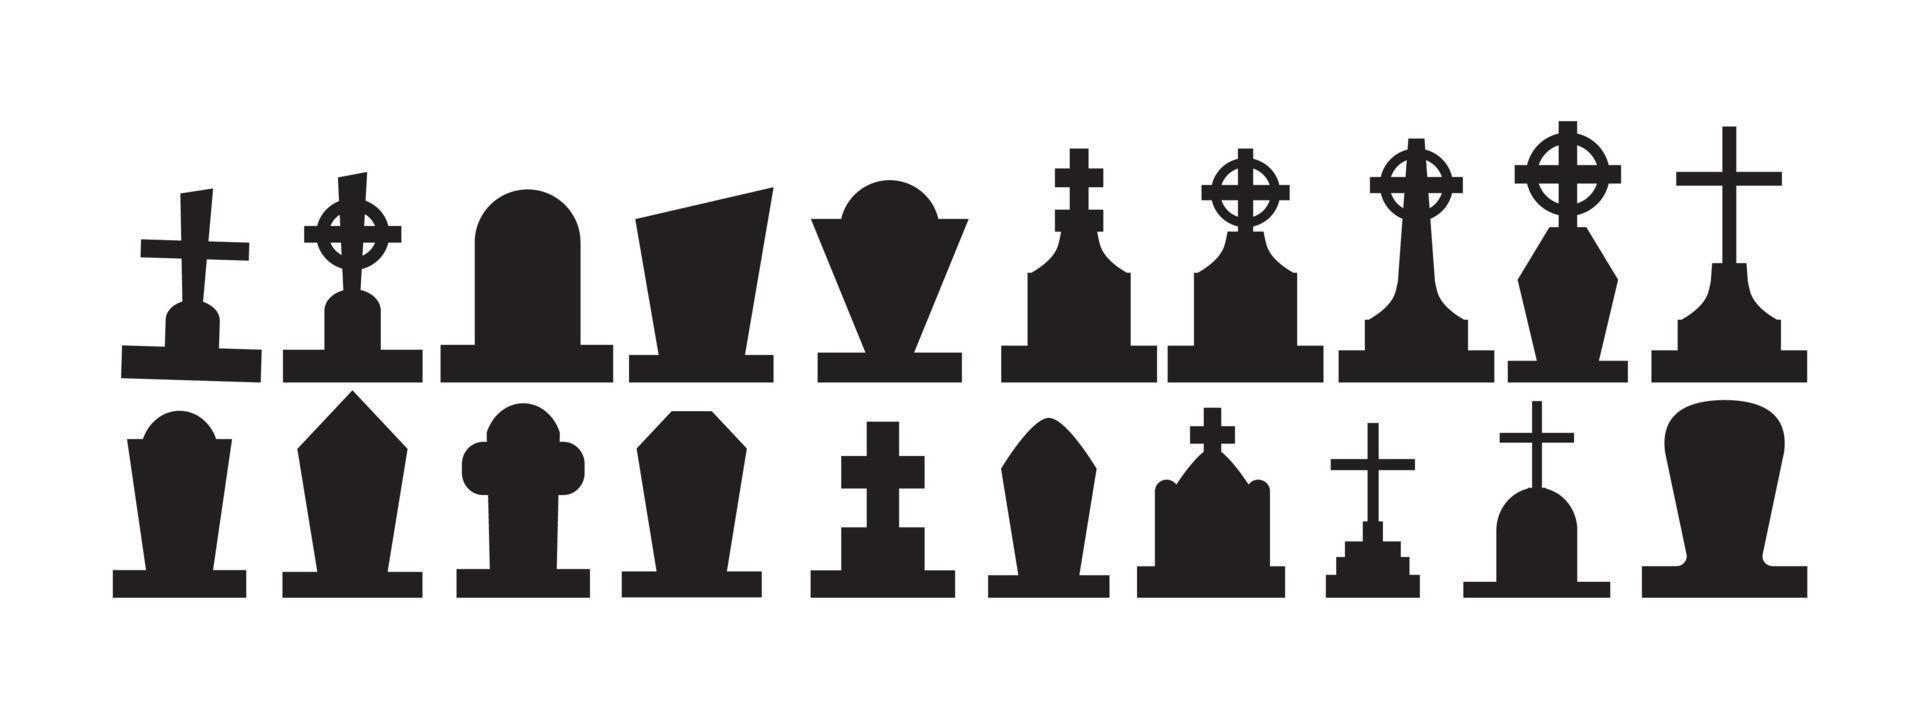 seleção de lápides do cemitério de halloween em um fundo branco - vetor